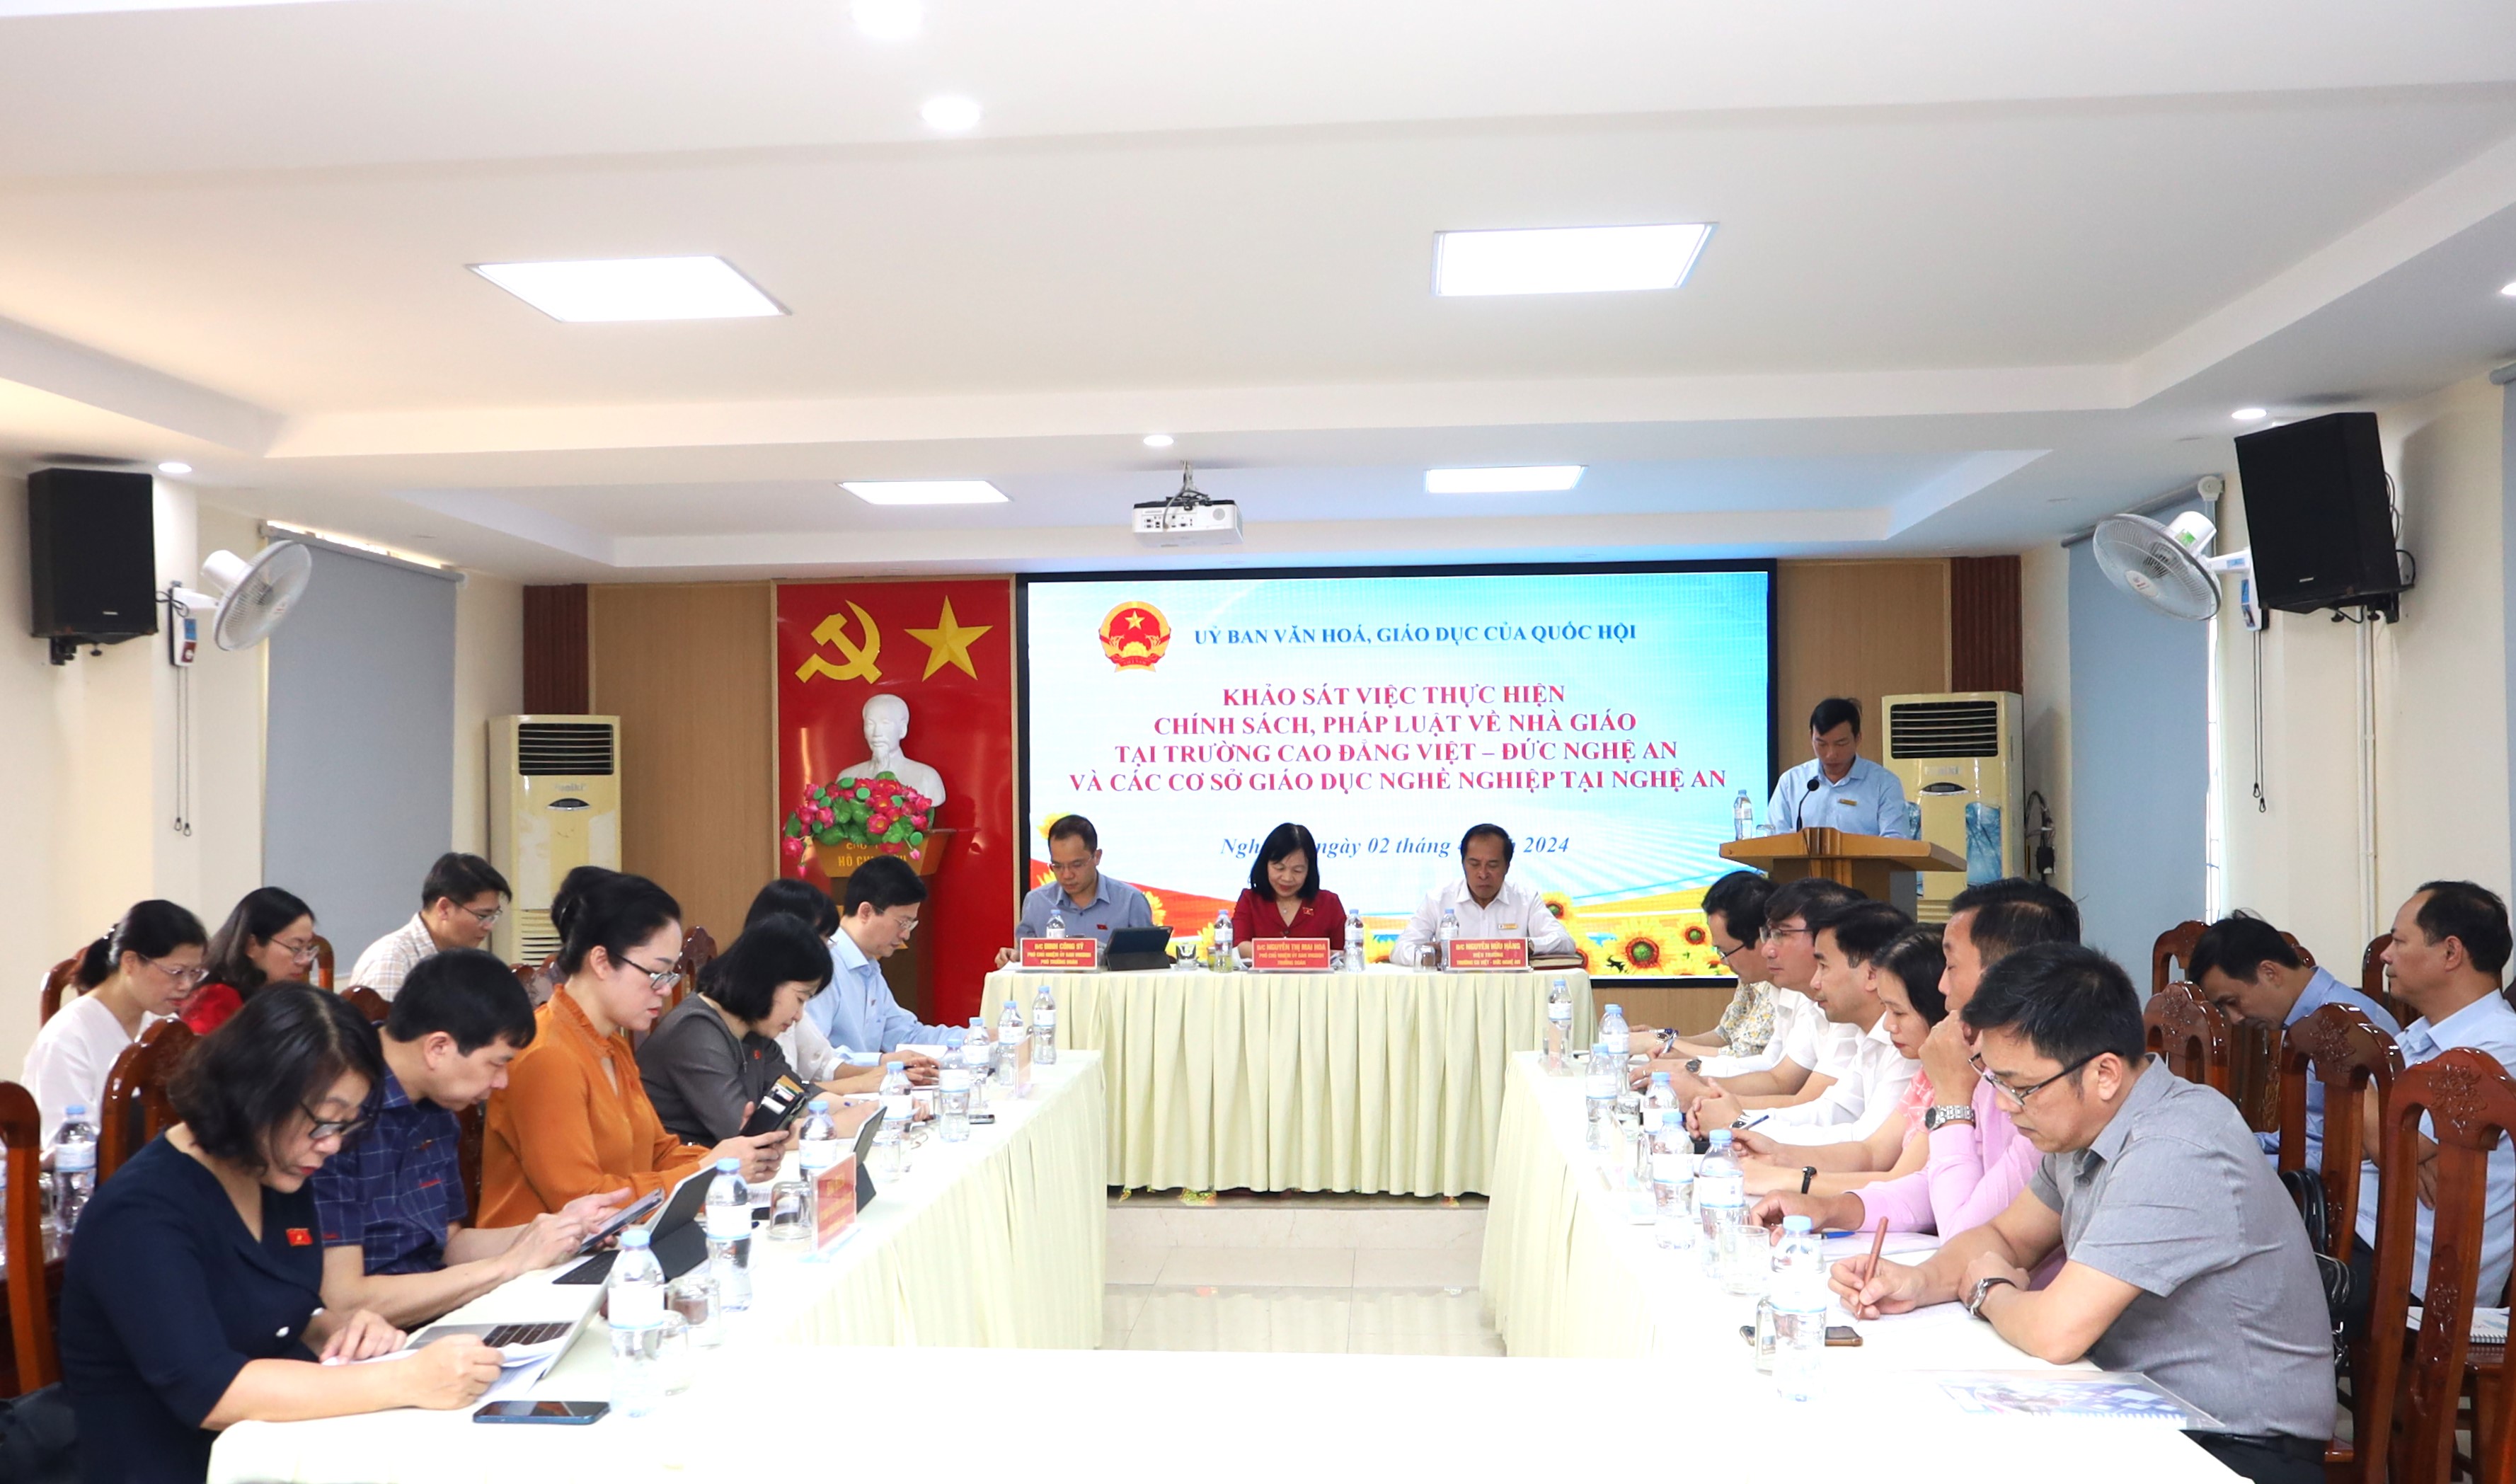 Ủy ban Văn hóa, Giáo dục của Quốc hội khảo sát thực hiện chính sách, pháp luật về Nhà giáo tại Trường Cao đẳng Việt – Đức Nghệ An